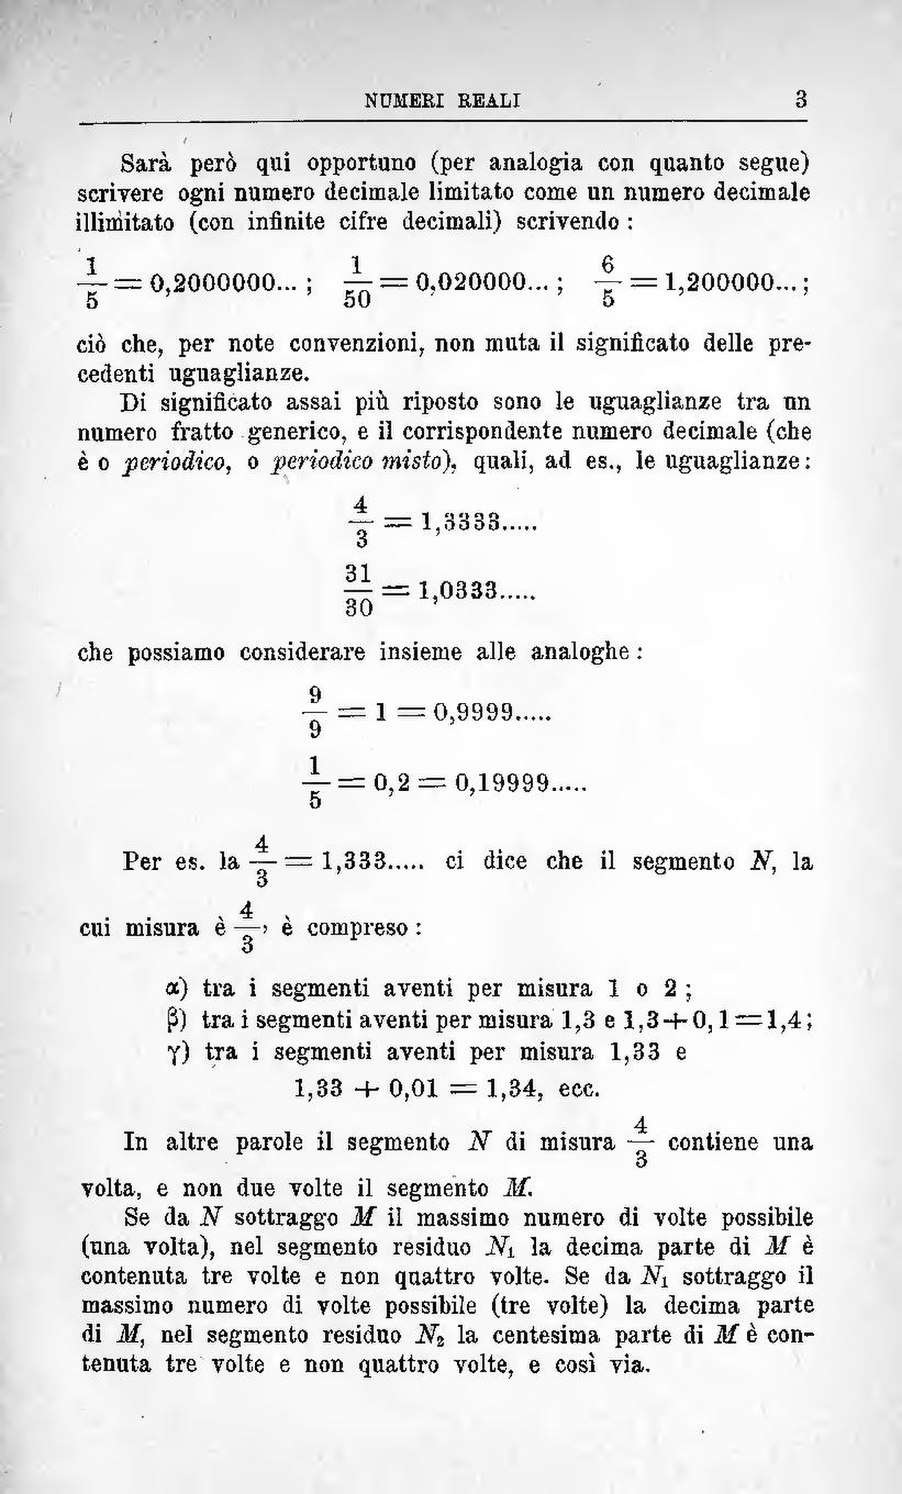 Pagina Lezioni Di Analisi Matematica Pdf 19 Wikisource